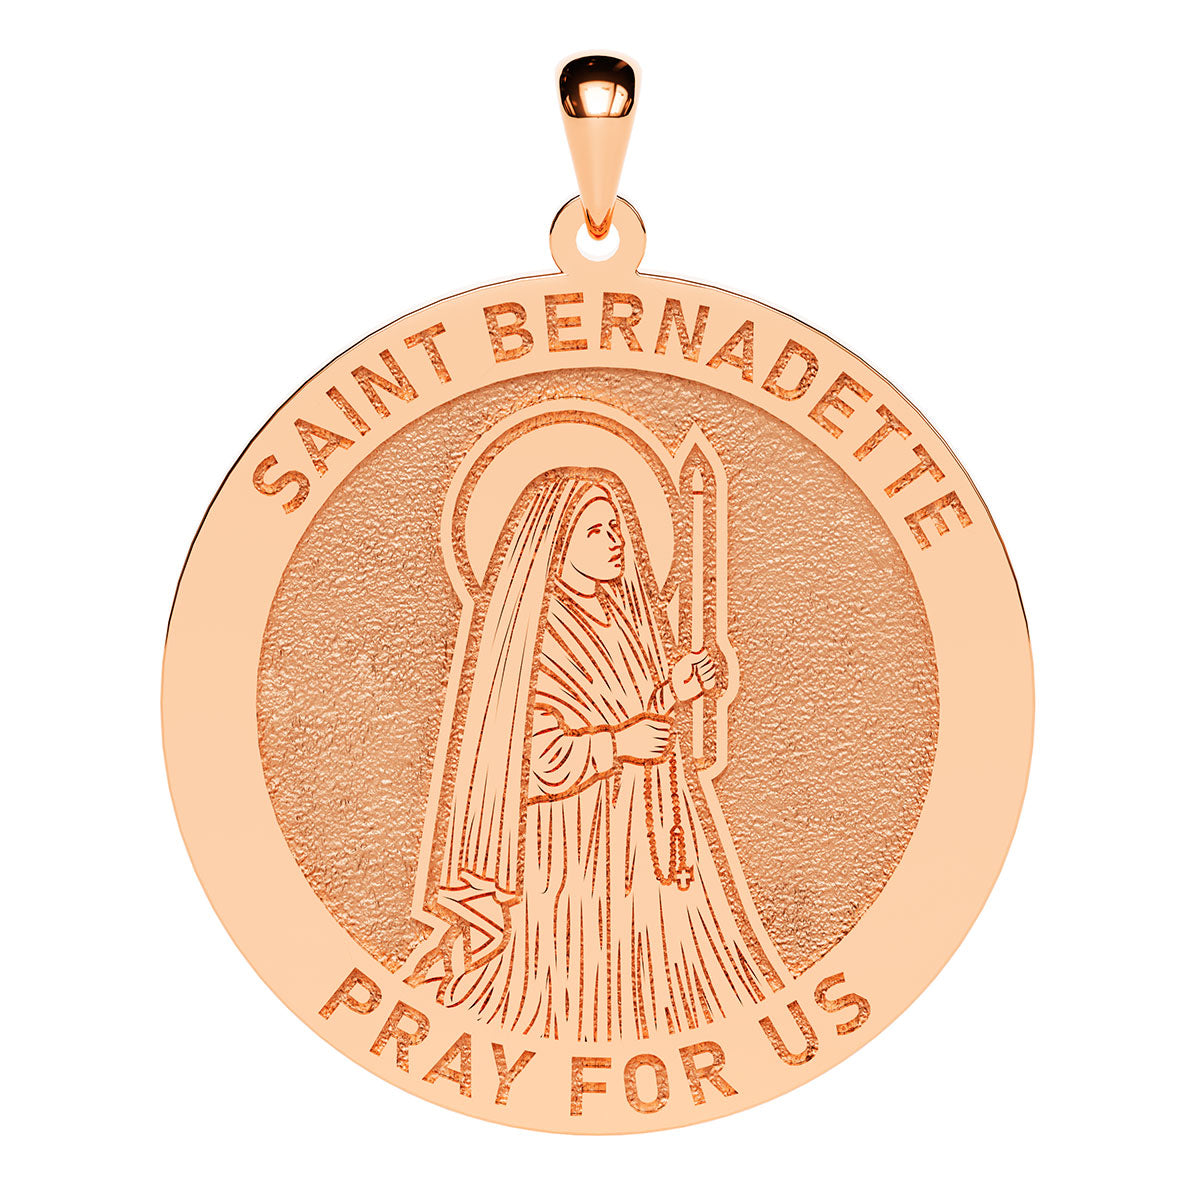 Saint Bernadette Round Religious Medal